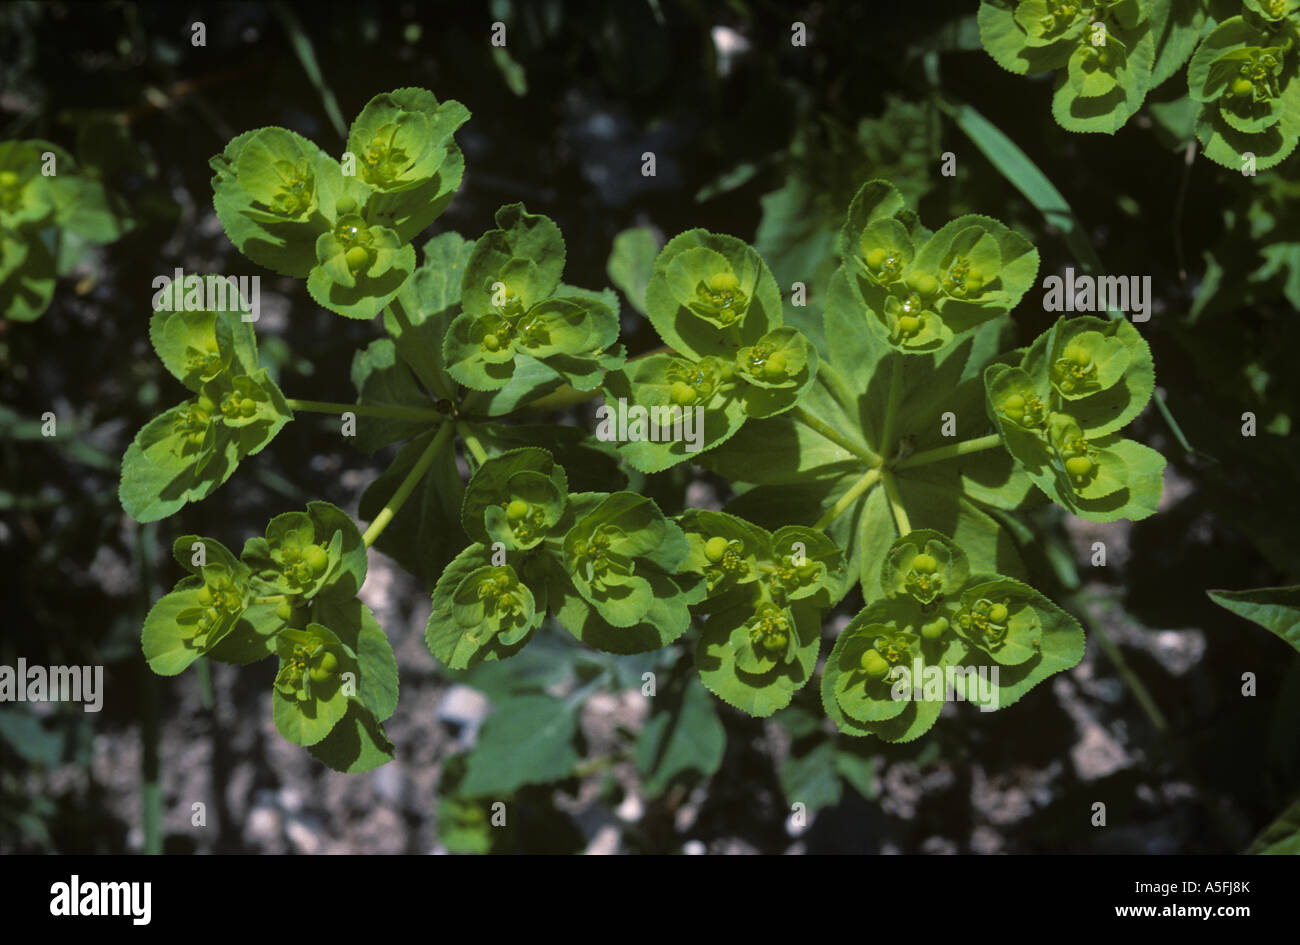 Sun spurge Euphorbia helioscopia flowering plant Stock Photo